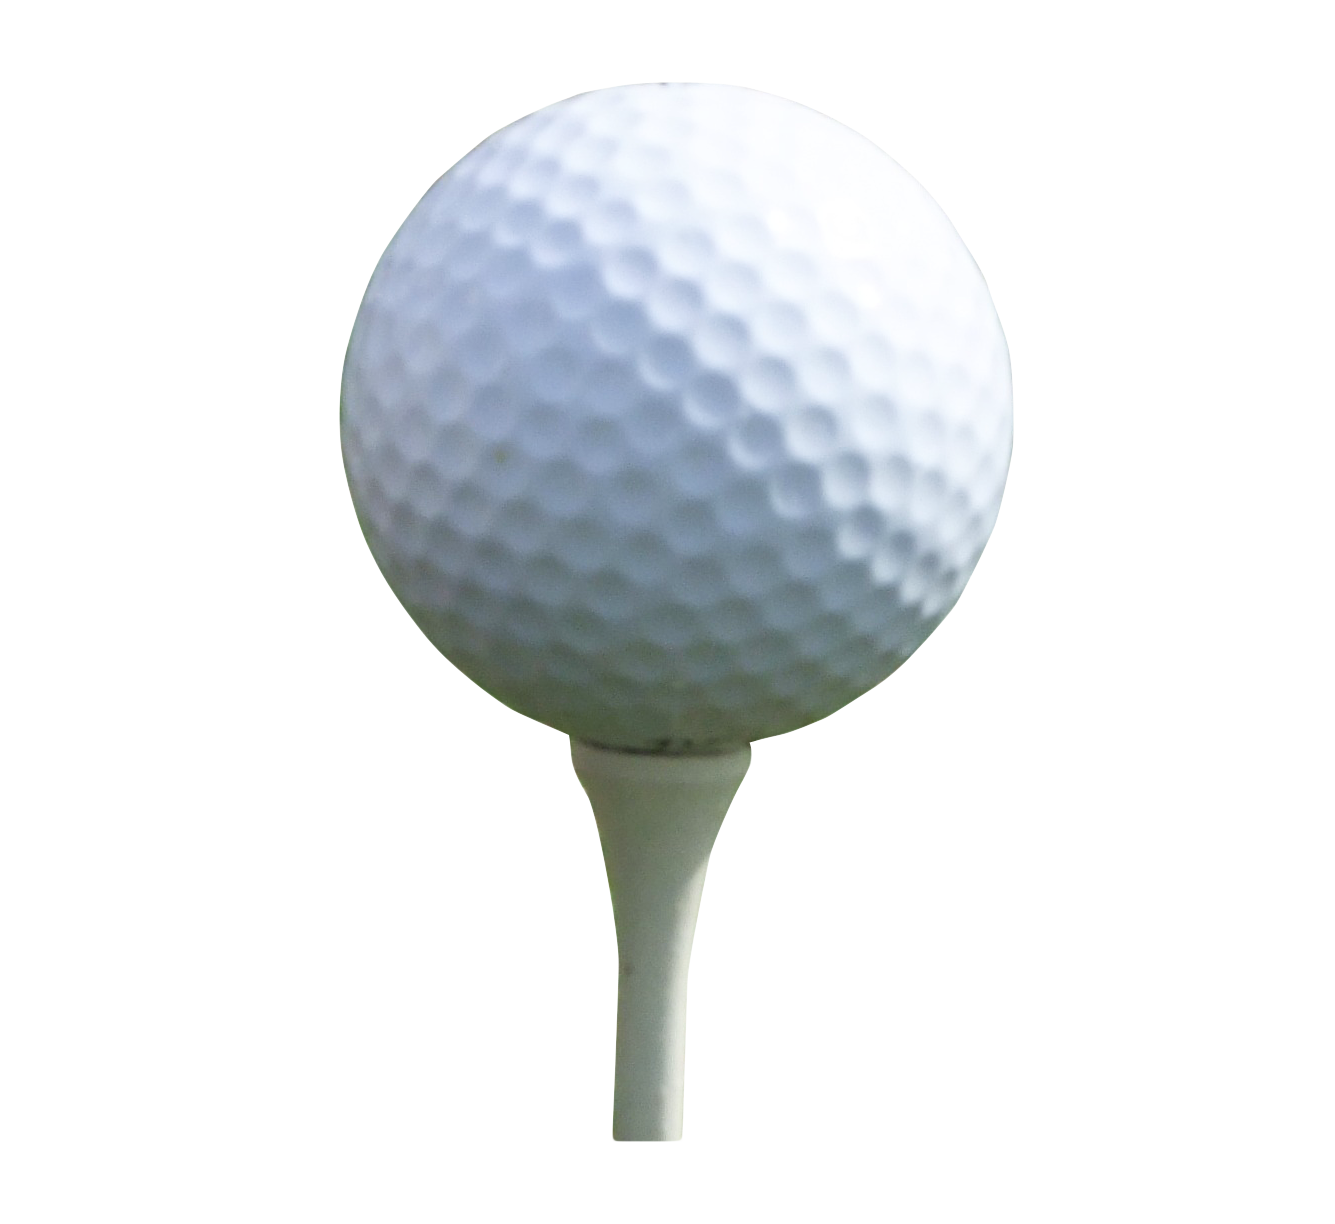 A Close Up Of A Golf Ball